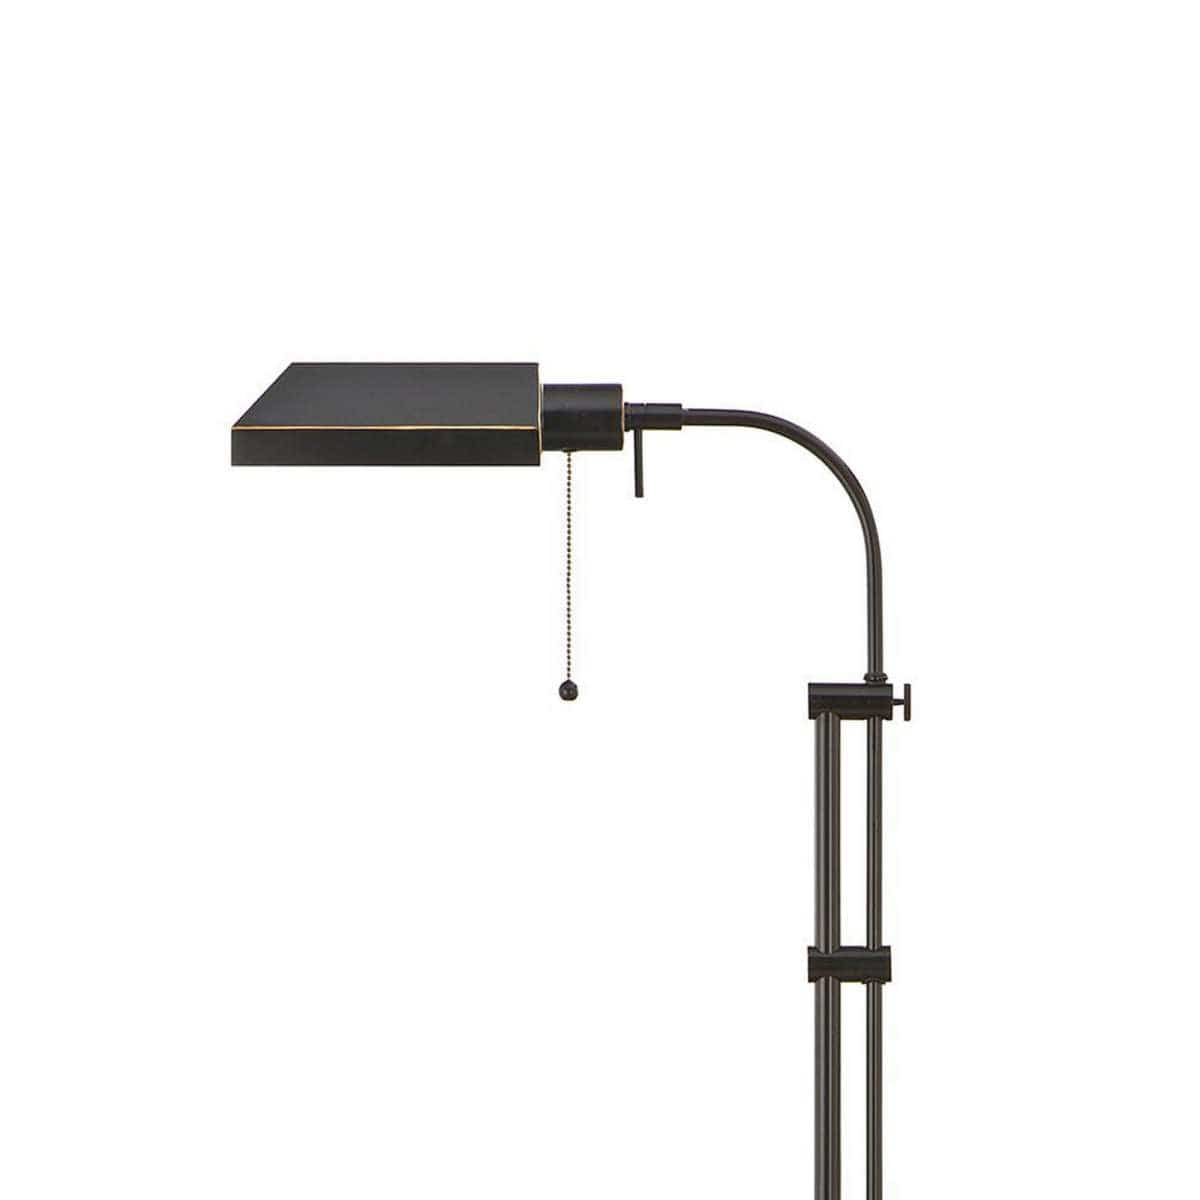 Benzara Metal Rectangular Floor Lamp With Adjustable Pole, Black By Benzara Floor Lamps BM225081